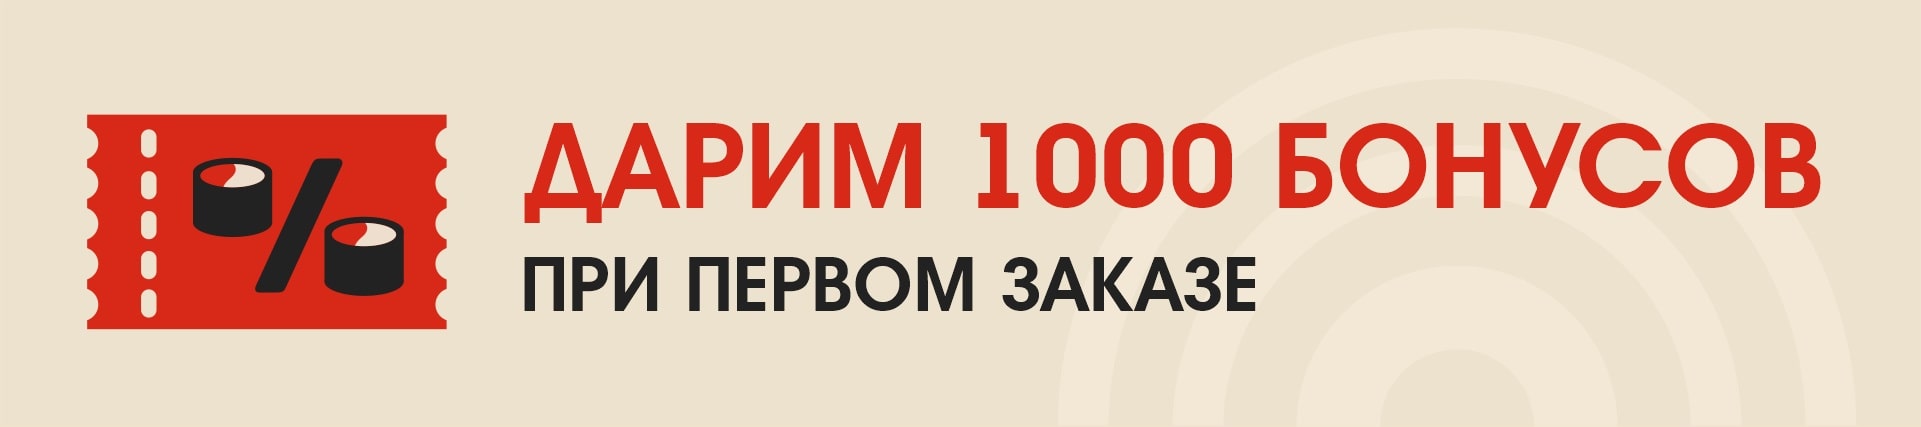 1000 в подарок БСК